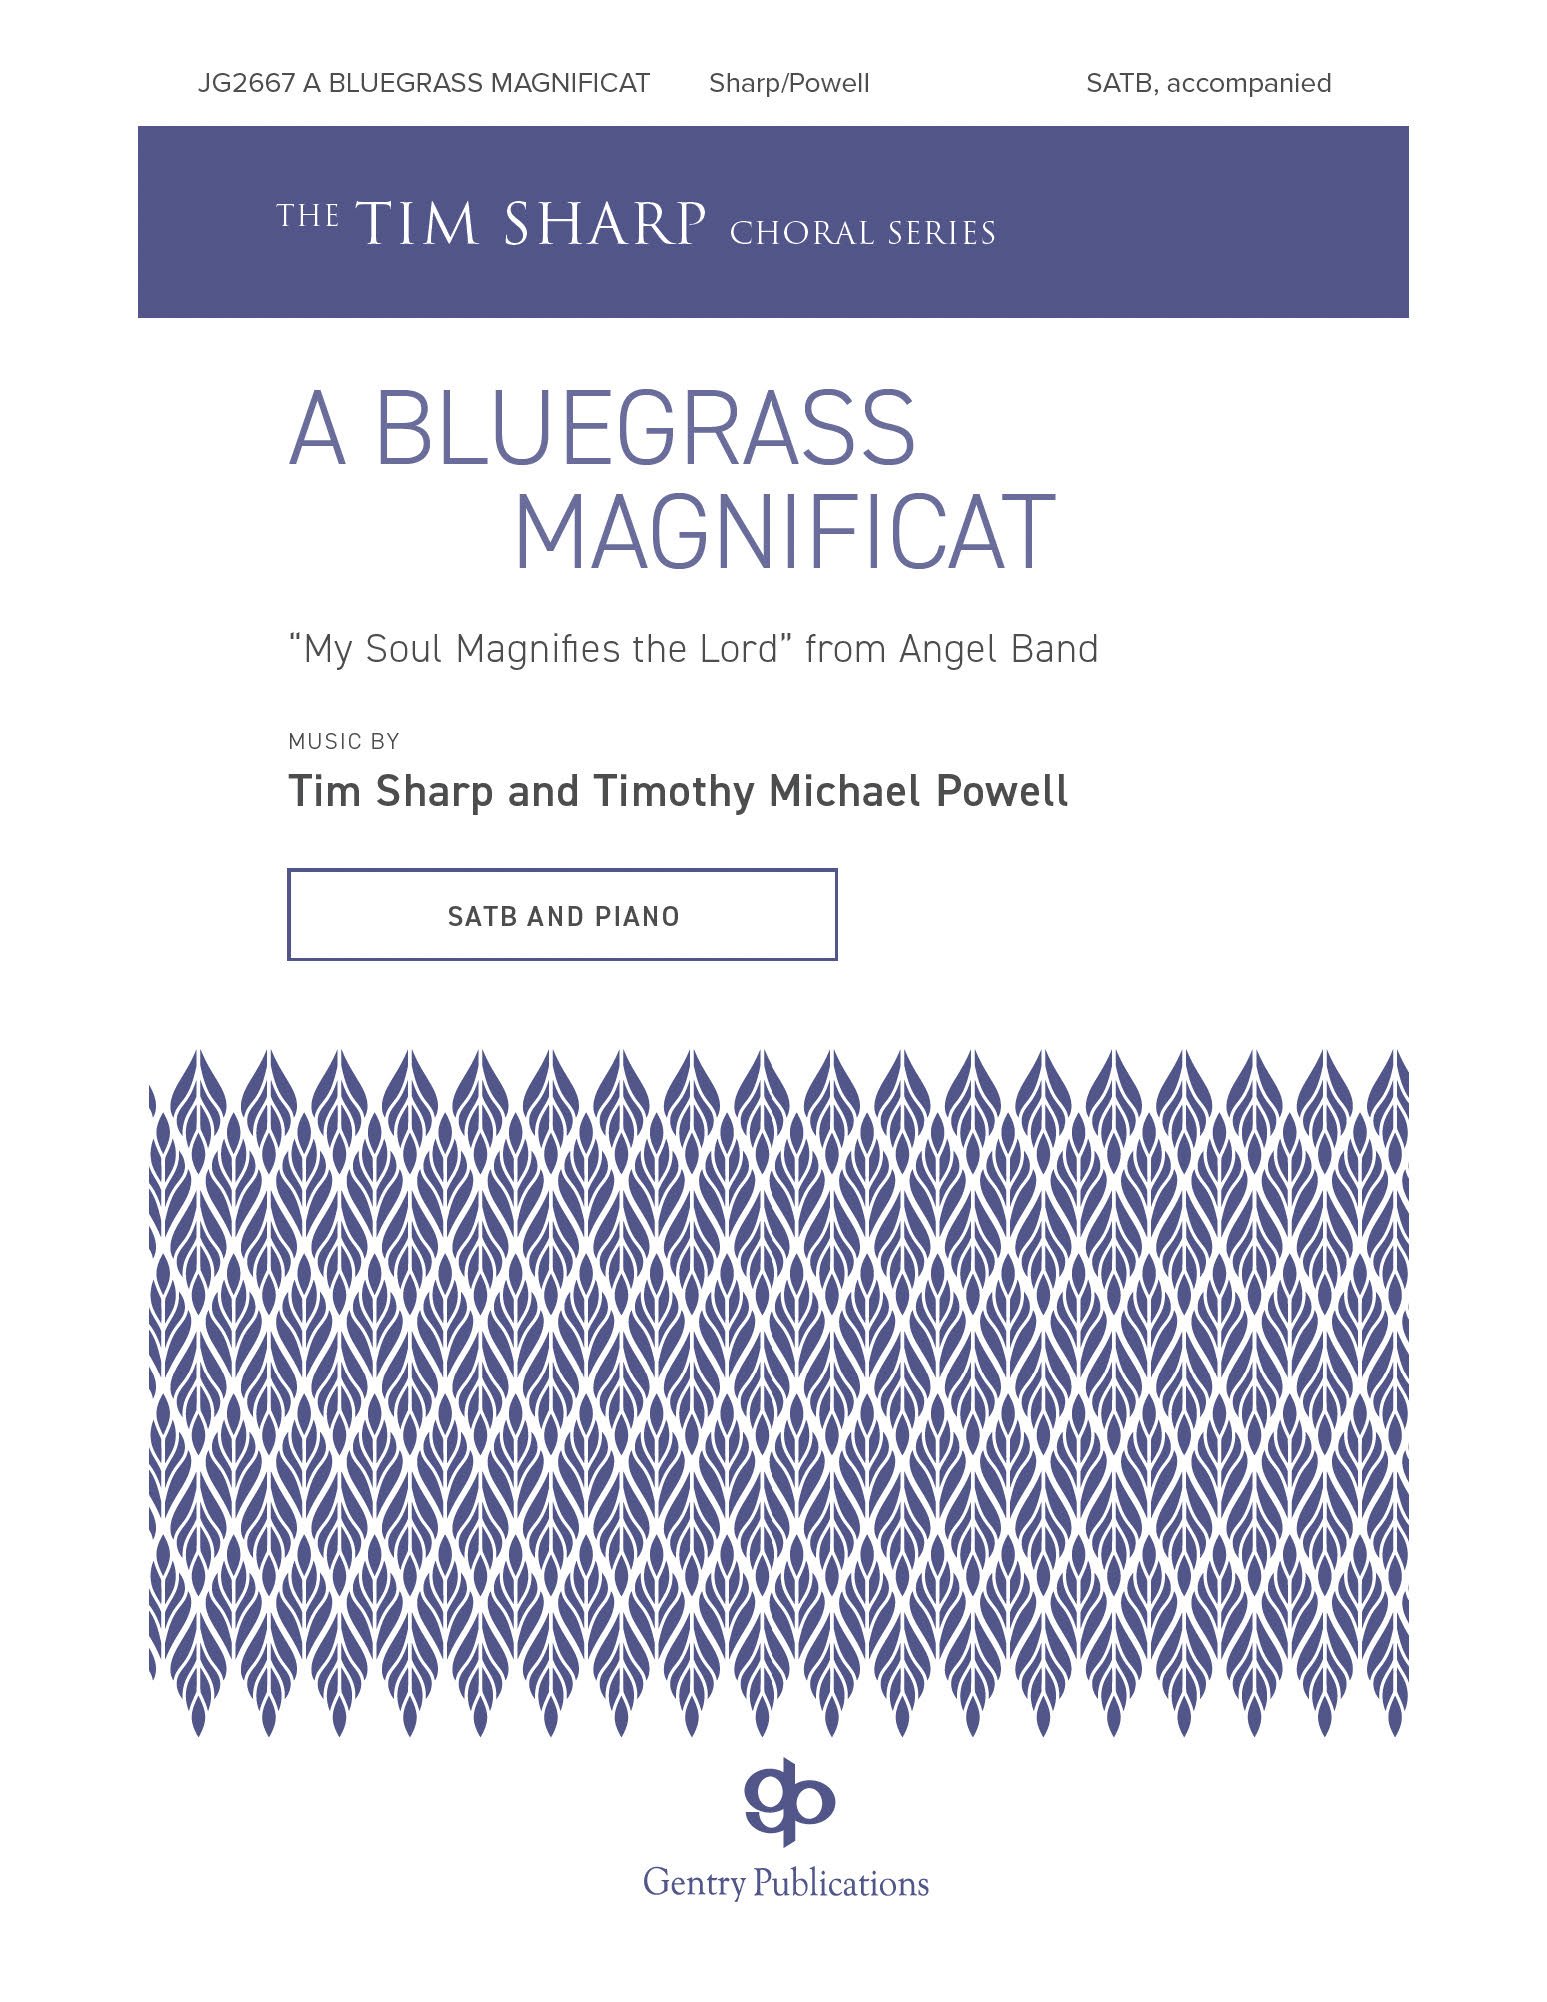 A Bluegrass Magnificat